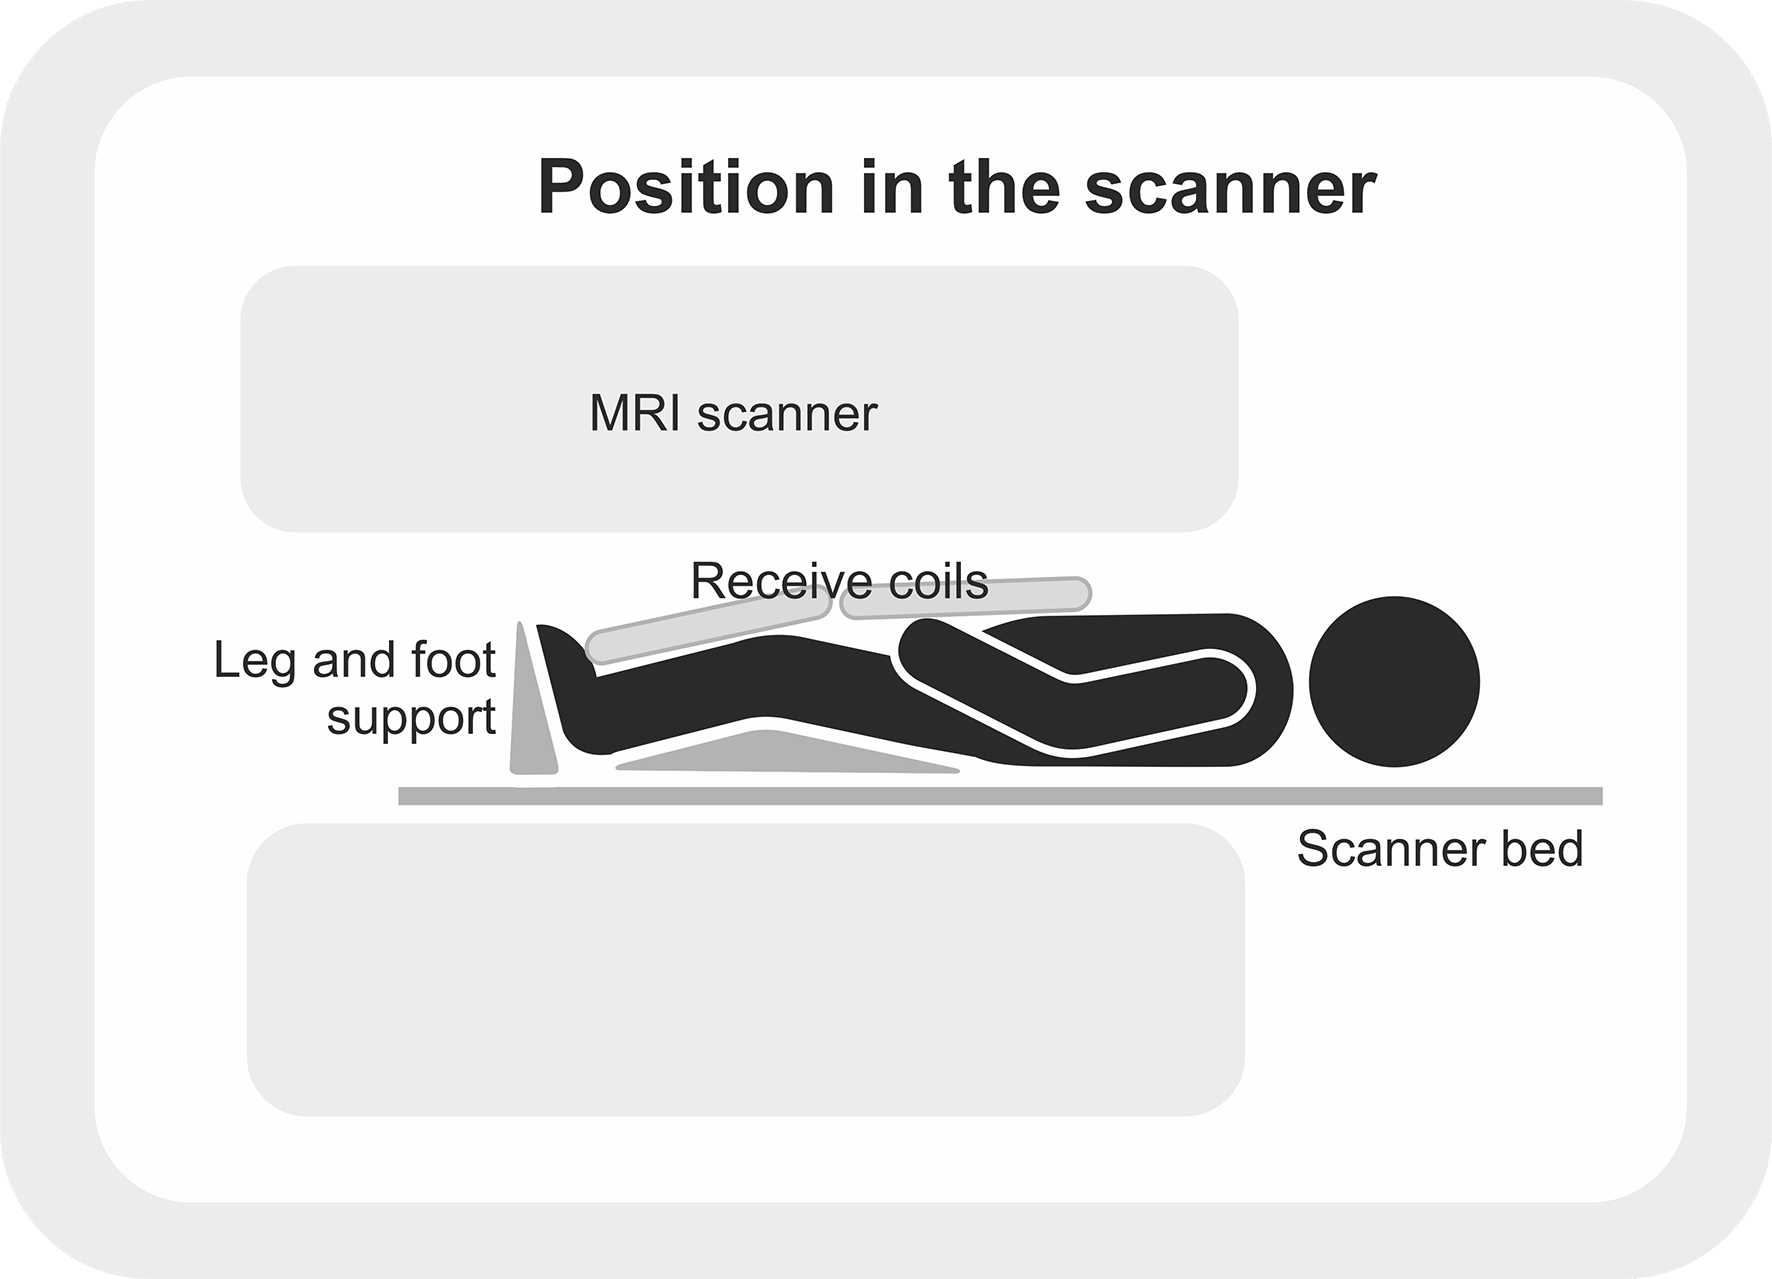 De positie van de deelnemer in de scanner